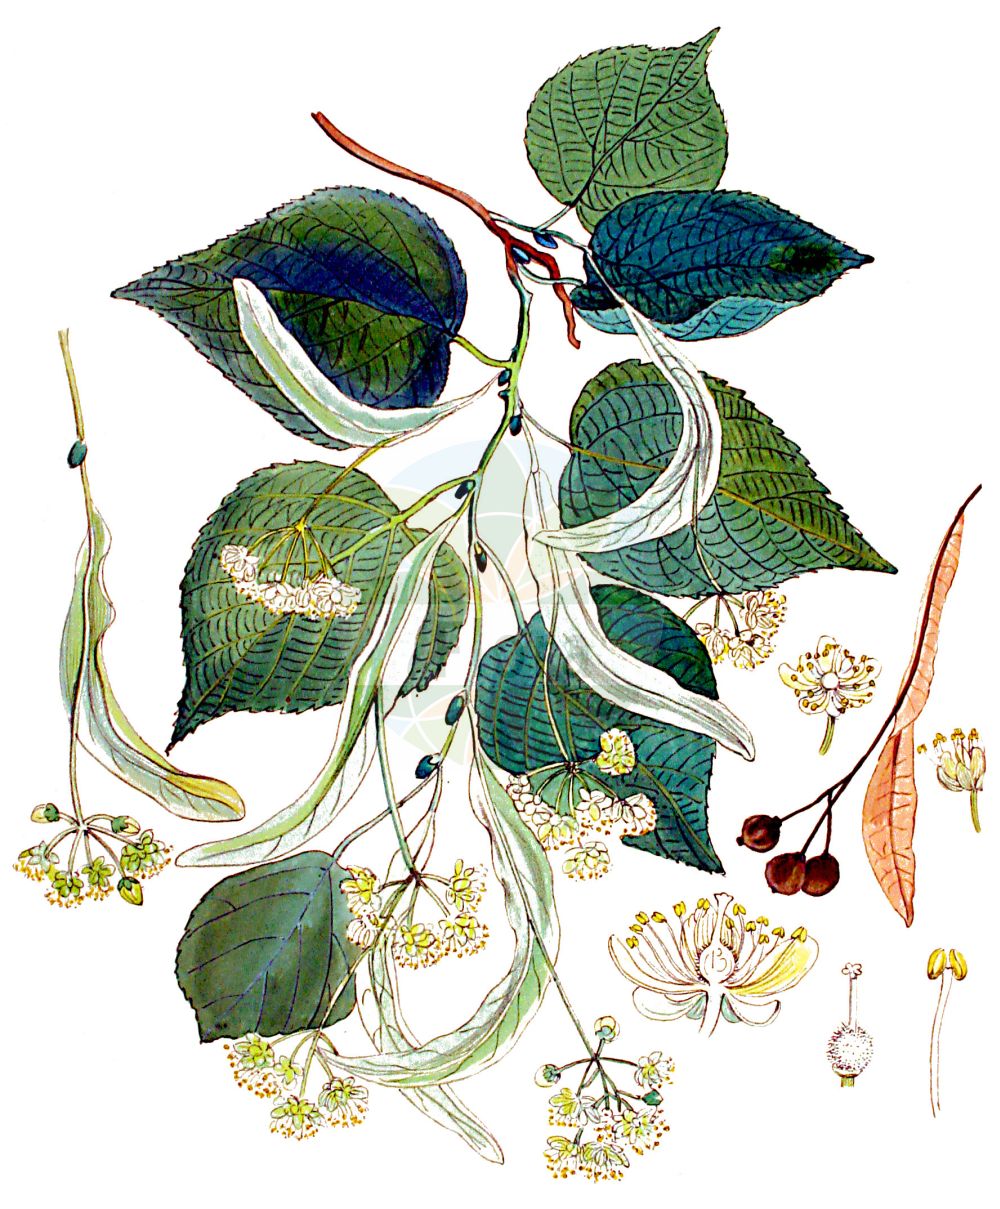 Historische Abbildung von Tilia cordata (Winter-Linde - Small-leaved Lime). Das Bild zeigt Blatt, Bluete, Frucht und Same. ---- Historical Drawing of Tilia cordata (Winter-Linde - Small-leaved Lime). The image is showing leaf, flower, fruit and seed.(Tilia cordata,Winter-Linde,Small-leaved Lime,Tilia cordata,Tilia officinarum,Tilia parvifolia,Tilia sylvestris,Tilia ulmifolia,Winter-Linde,Spaet-Linde,Wald-Linde,Small-leaved Lime,Bast,Littleleaf Linden,Small-leaved Linden,Tilia,Linde,Lime,Malvaceae,Malvengewächse,Mallow family,Blatt,Bluete,Frucht,Same,leaf,flower,fruit,seed,Kops (1800-1934))